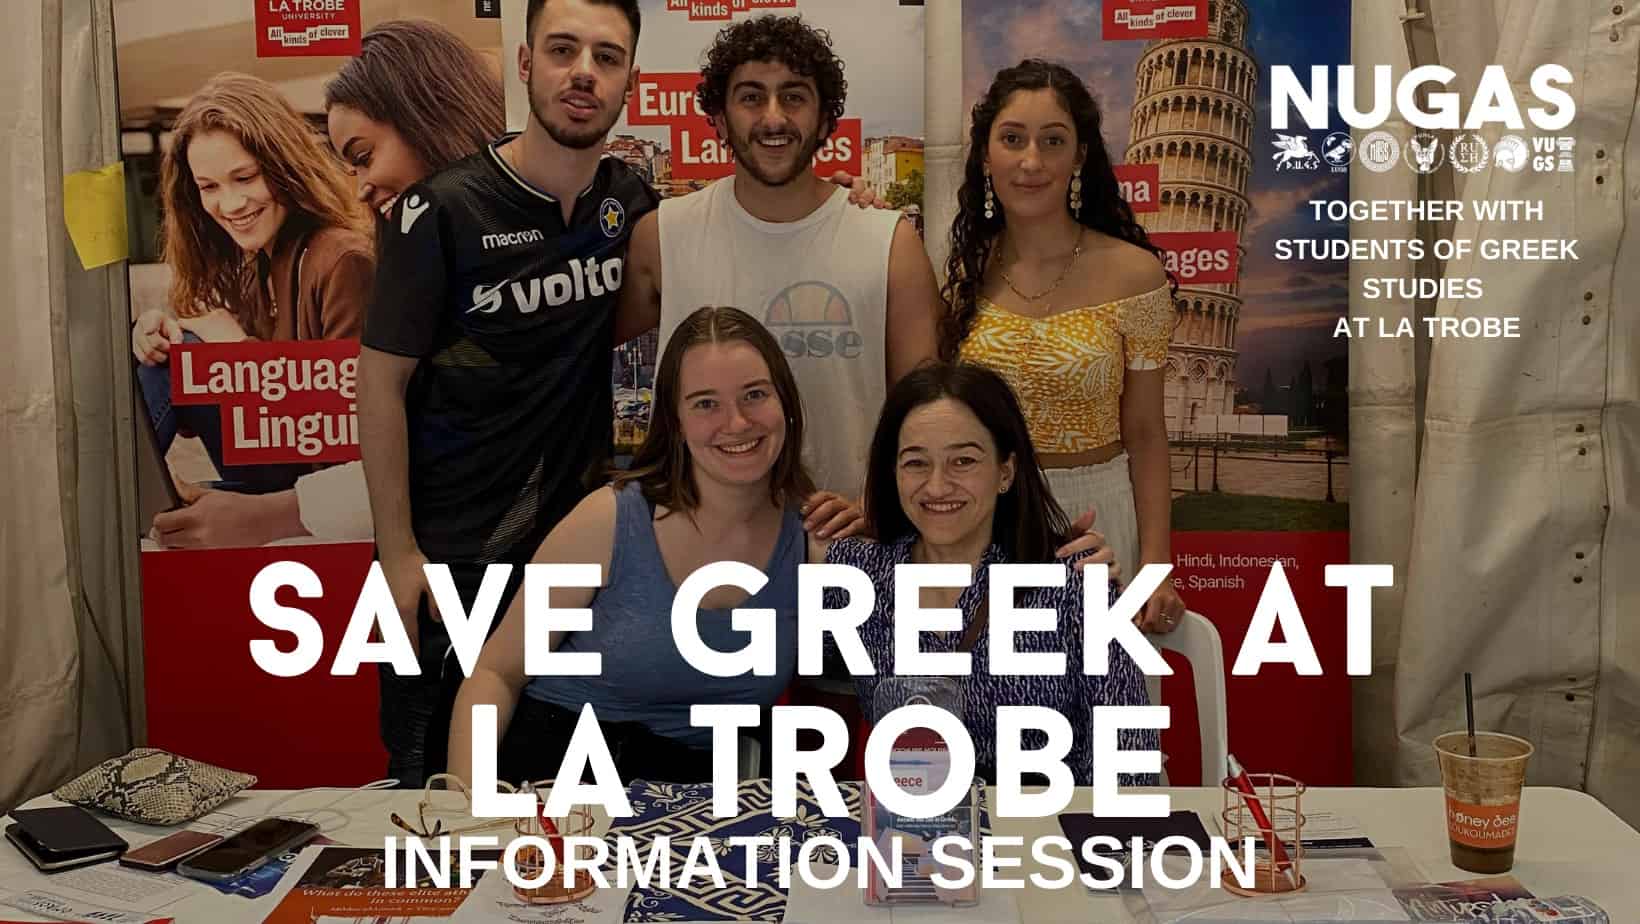 Save Modern Greek at La Trobe University, Melbourne